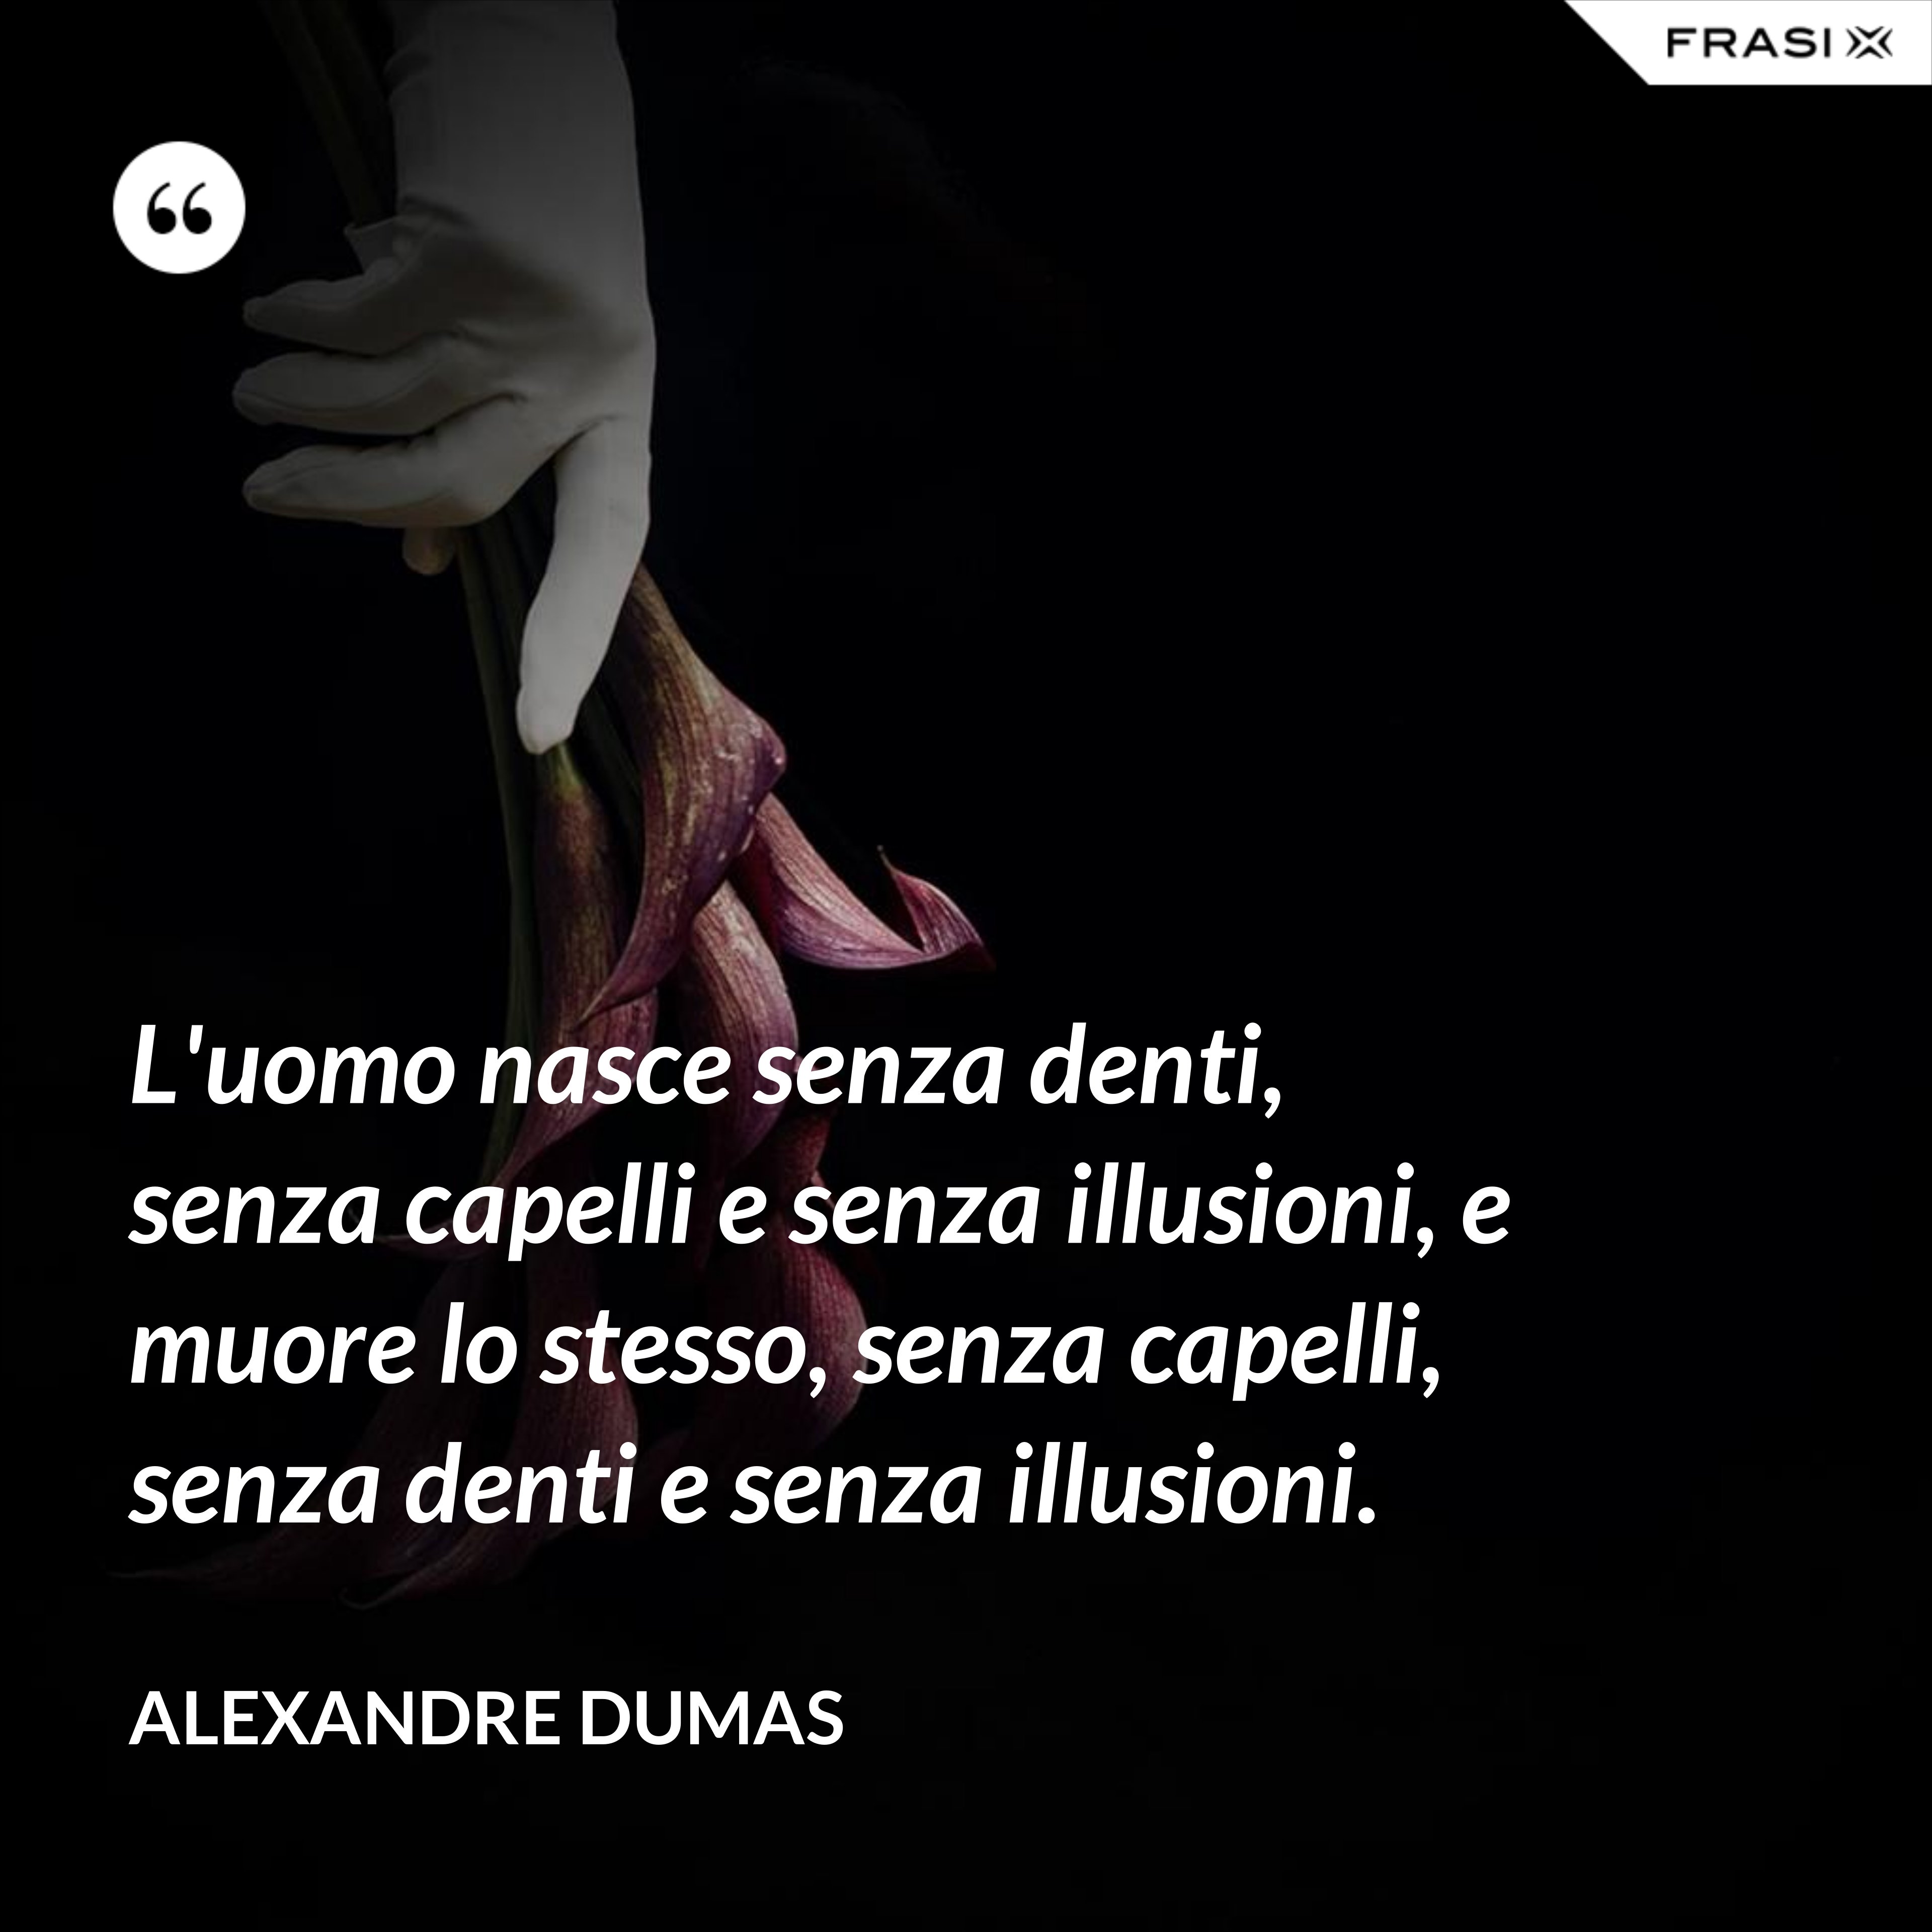 L'uomo nasce senza denti, senza capelli e senza illusioni, e muore lo stesso, senza capelli, senza denti e senza illusioni. - Alexandre Dumas